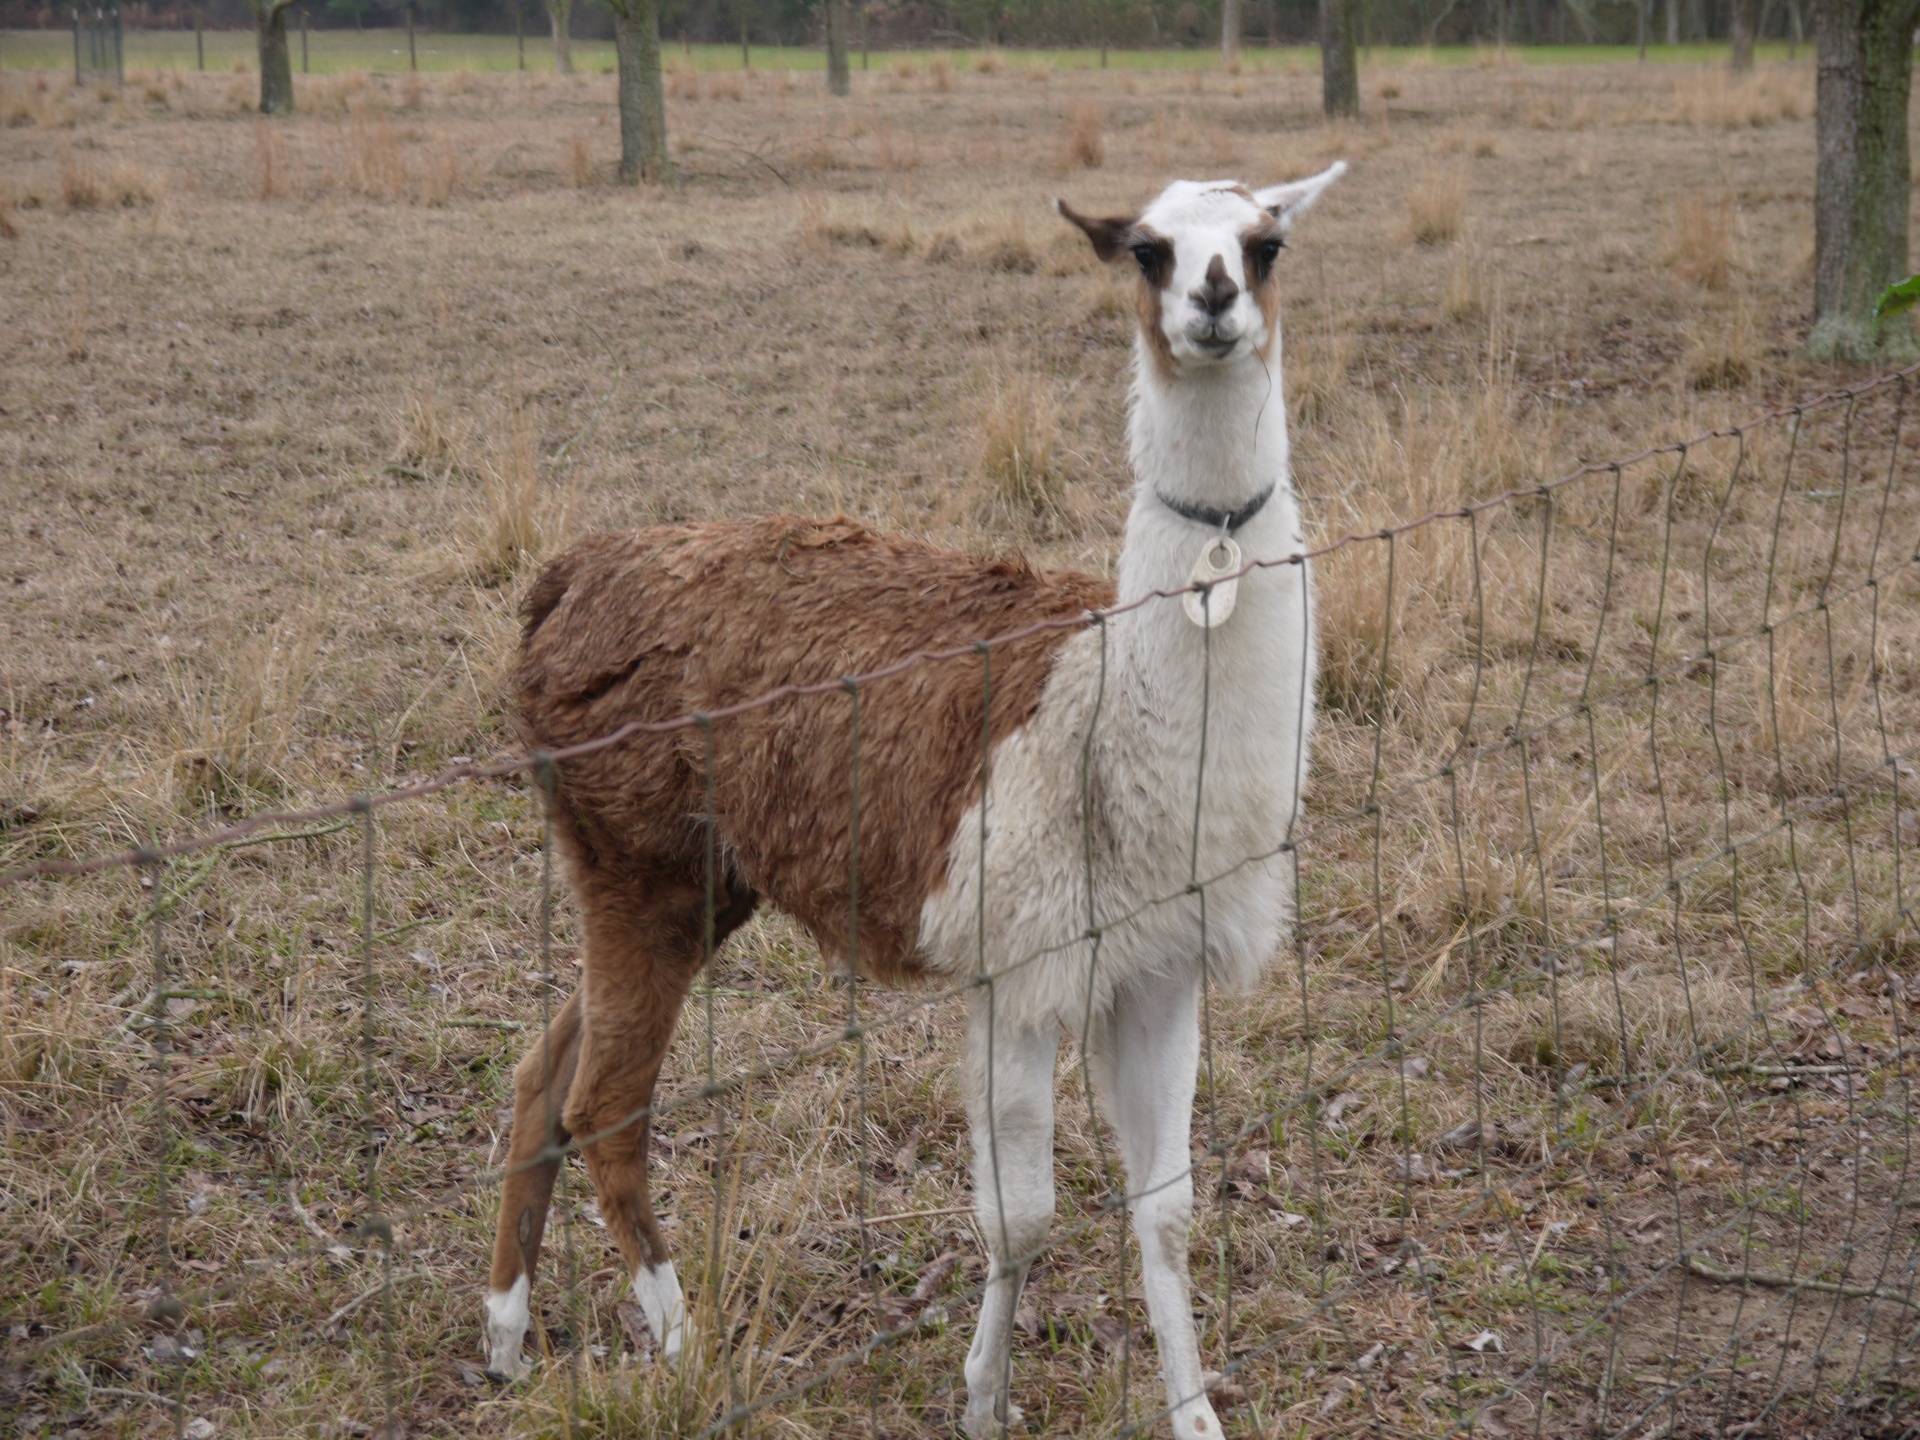 Guard Llama "Gerty"